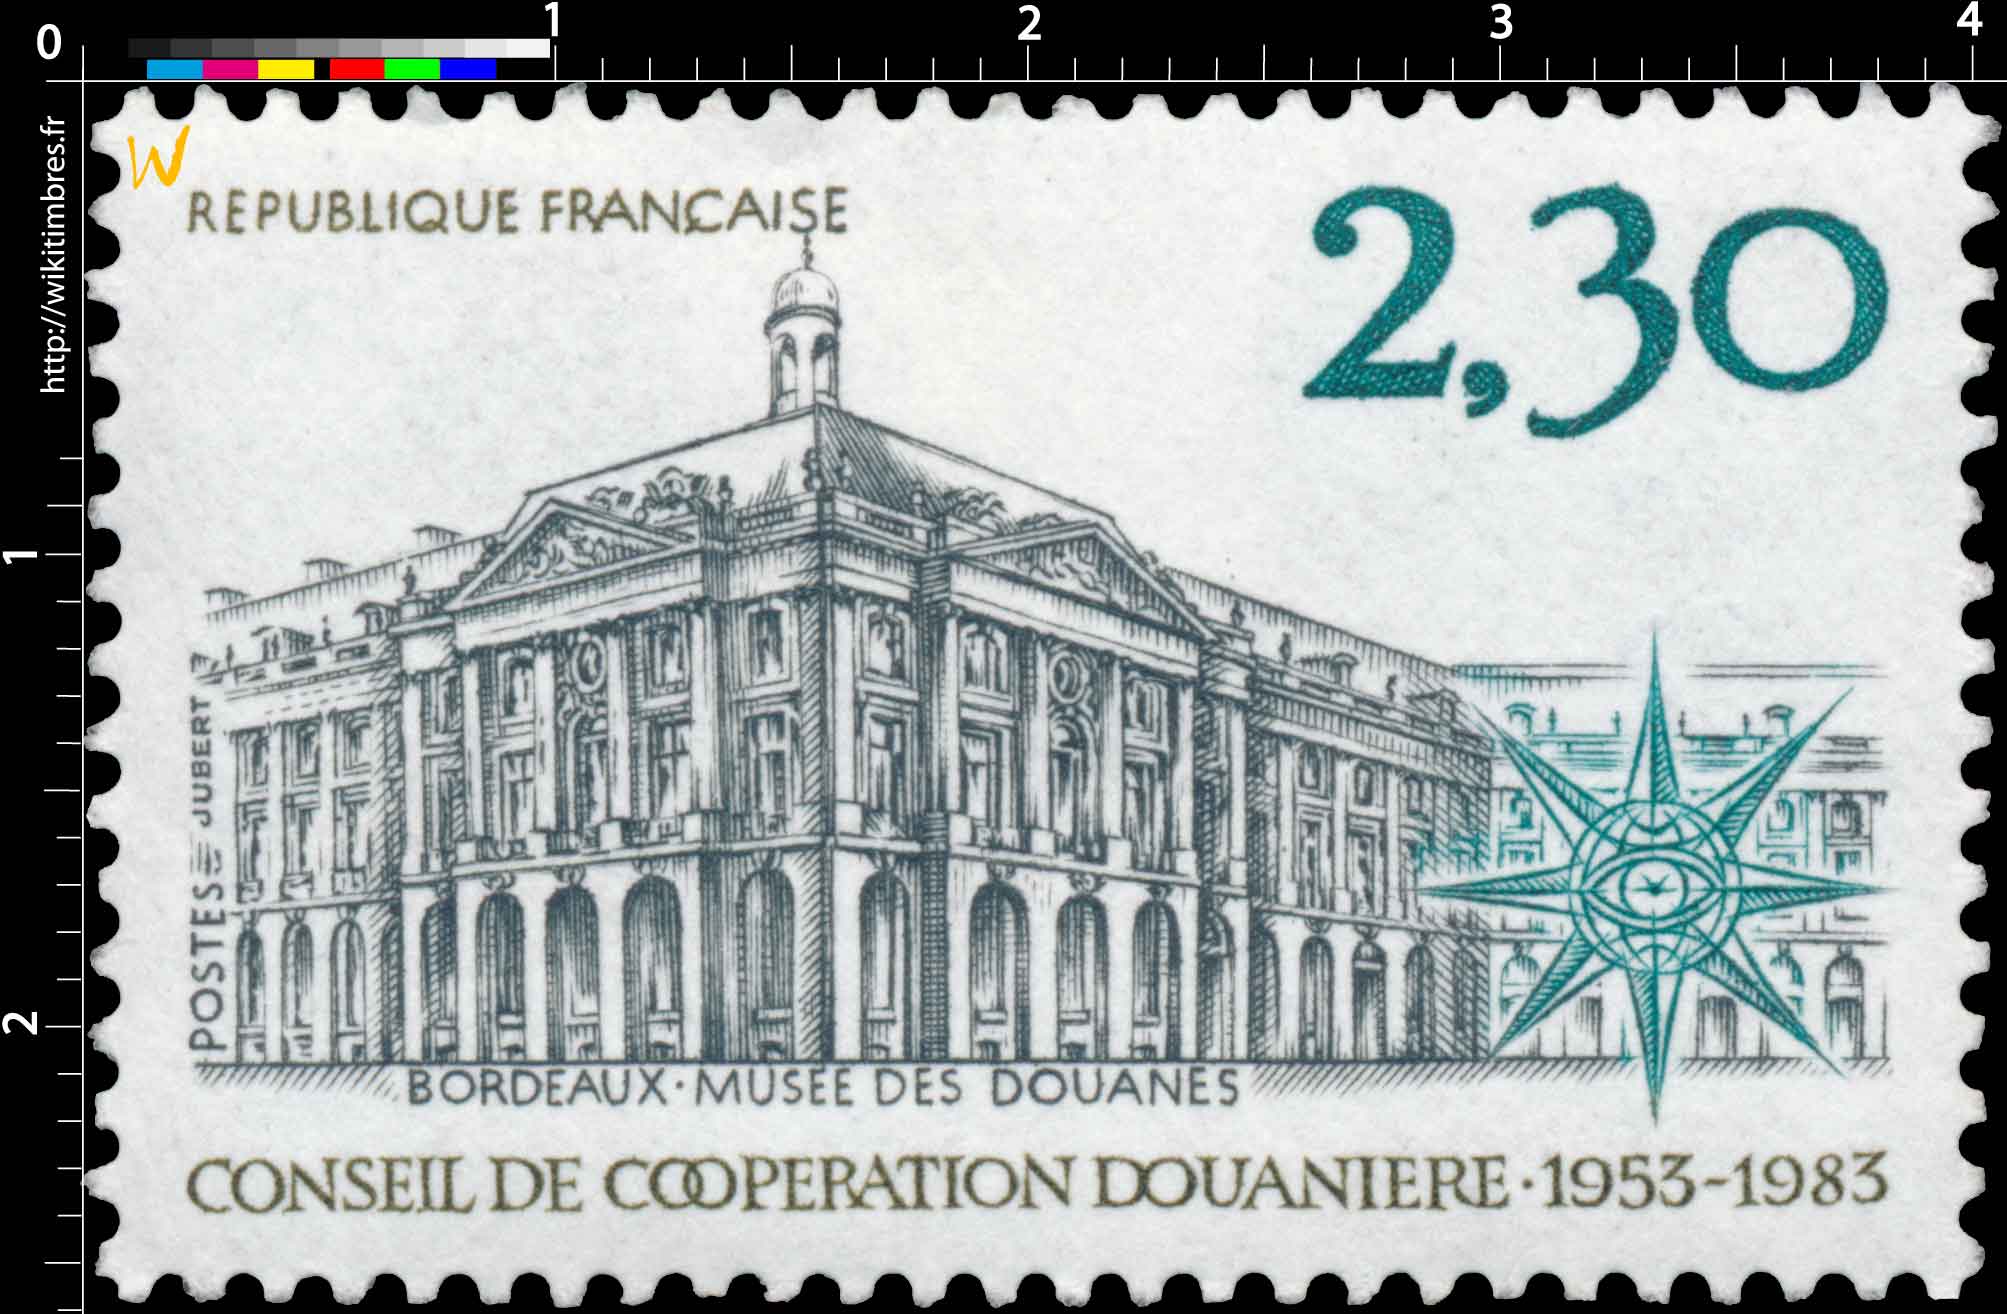 BORDEAUX - MUSÉE DES DOUANES CONSEIL DE COOPÉRATION DOUANIÈRE 1953-1983